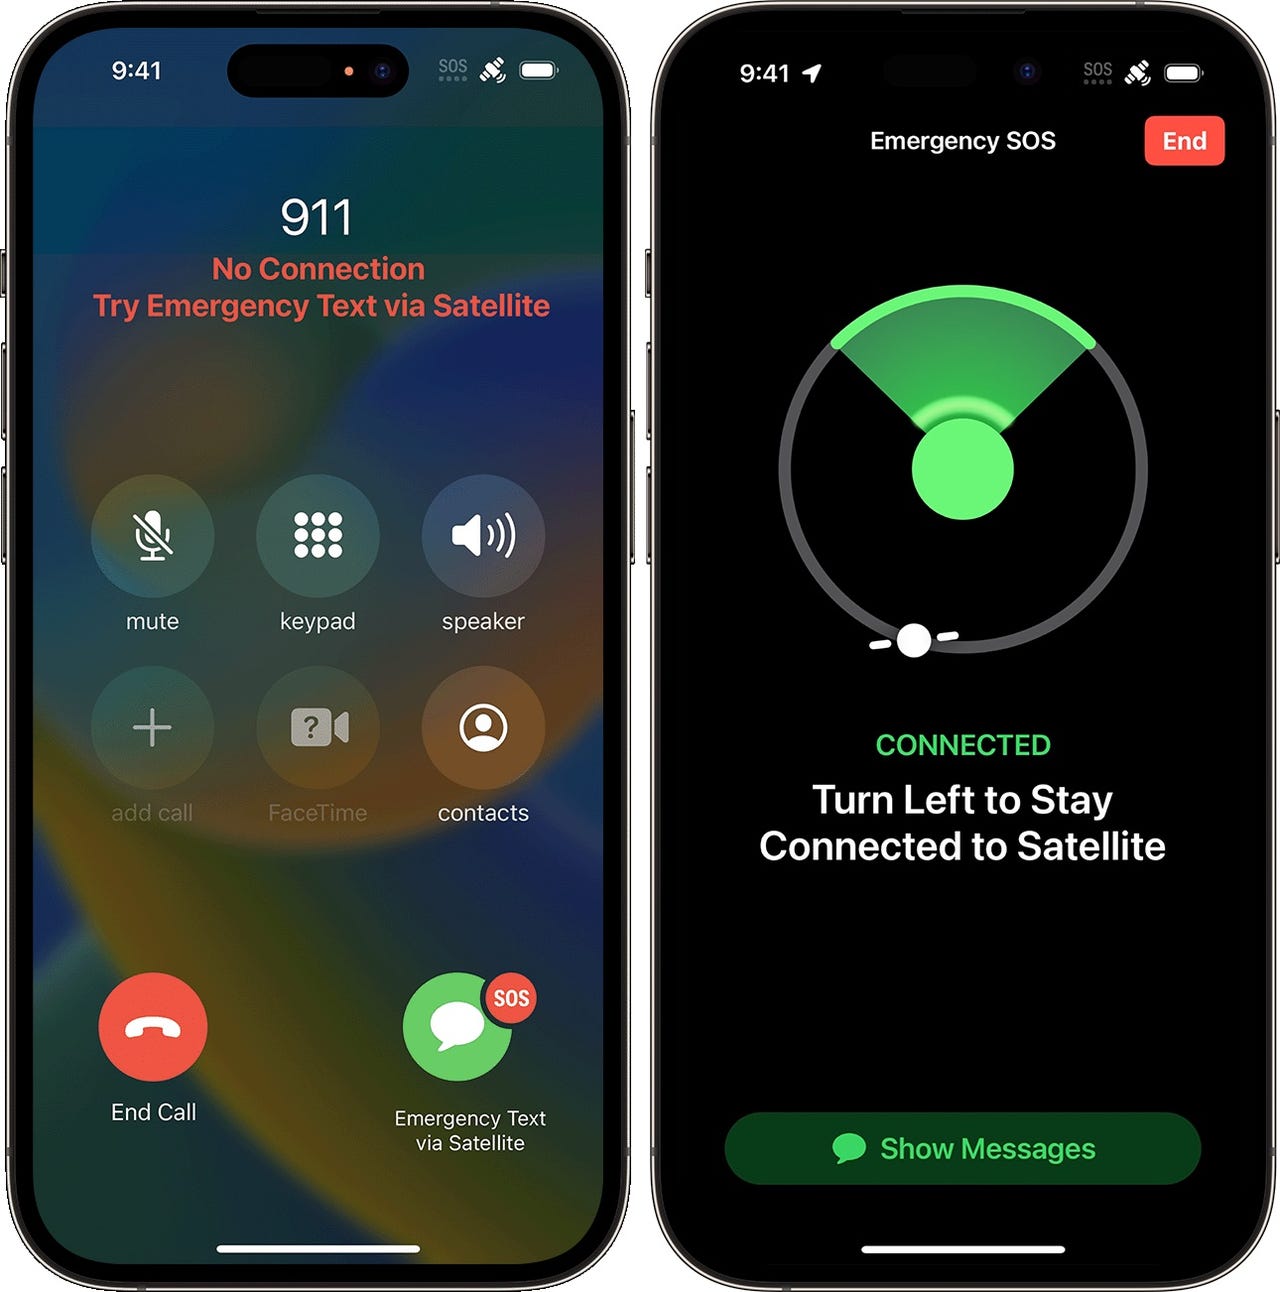 Apple emergency SOS via satellite on iPhone